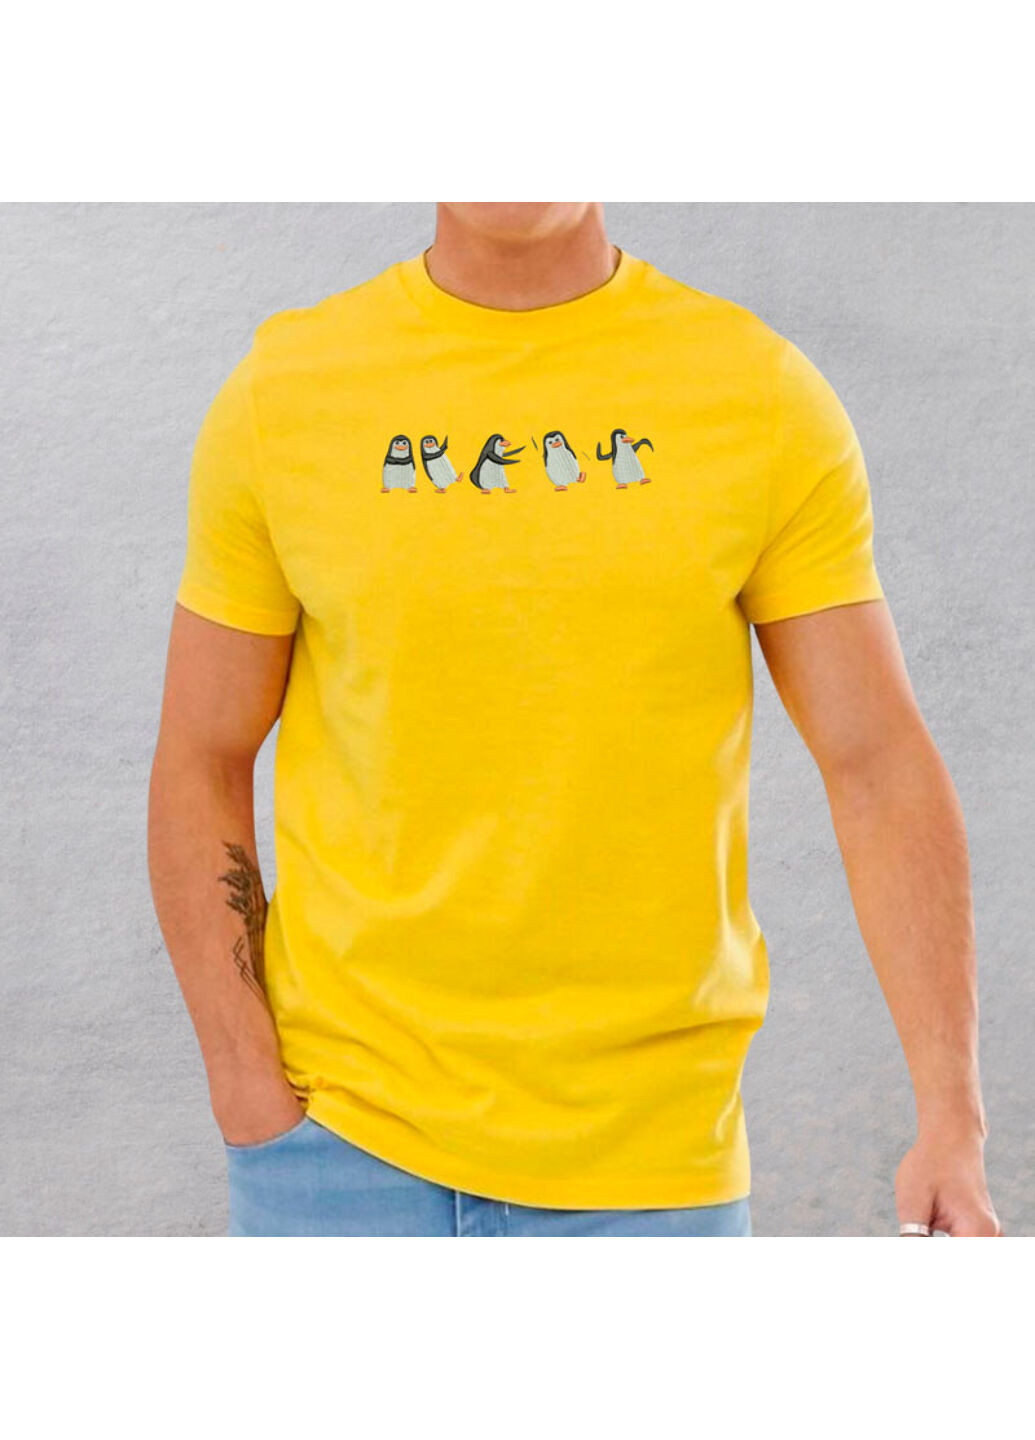 Желтая футболка с вышивкой пингвинов 01-5 мужская желтый s No Brand